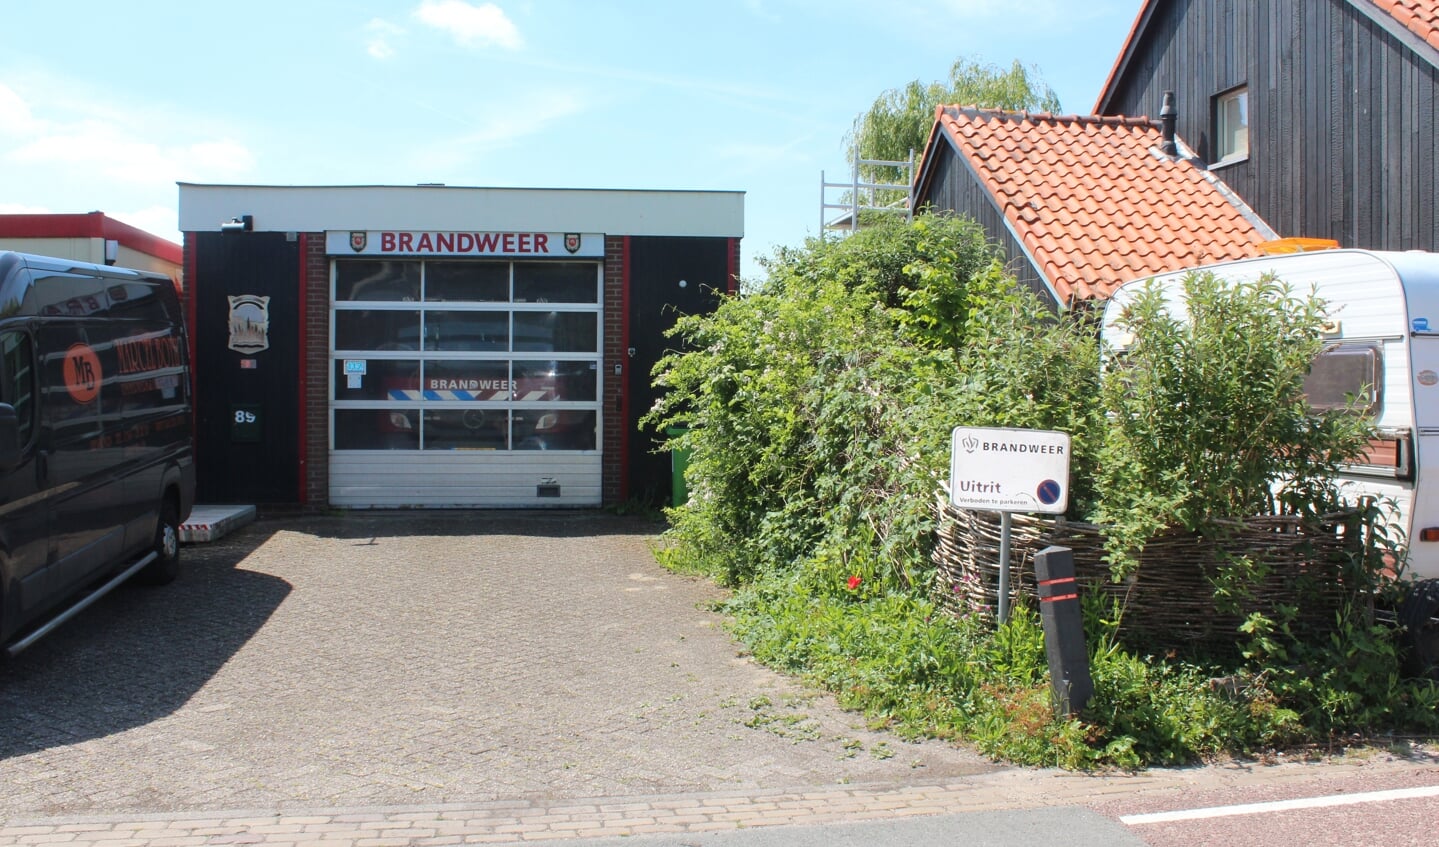 Aan de Laan van Nifterlake 89 in Tienhoven is de huidige brandweerpost gehuisvest. [foto Henk van de Bunt]